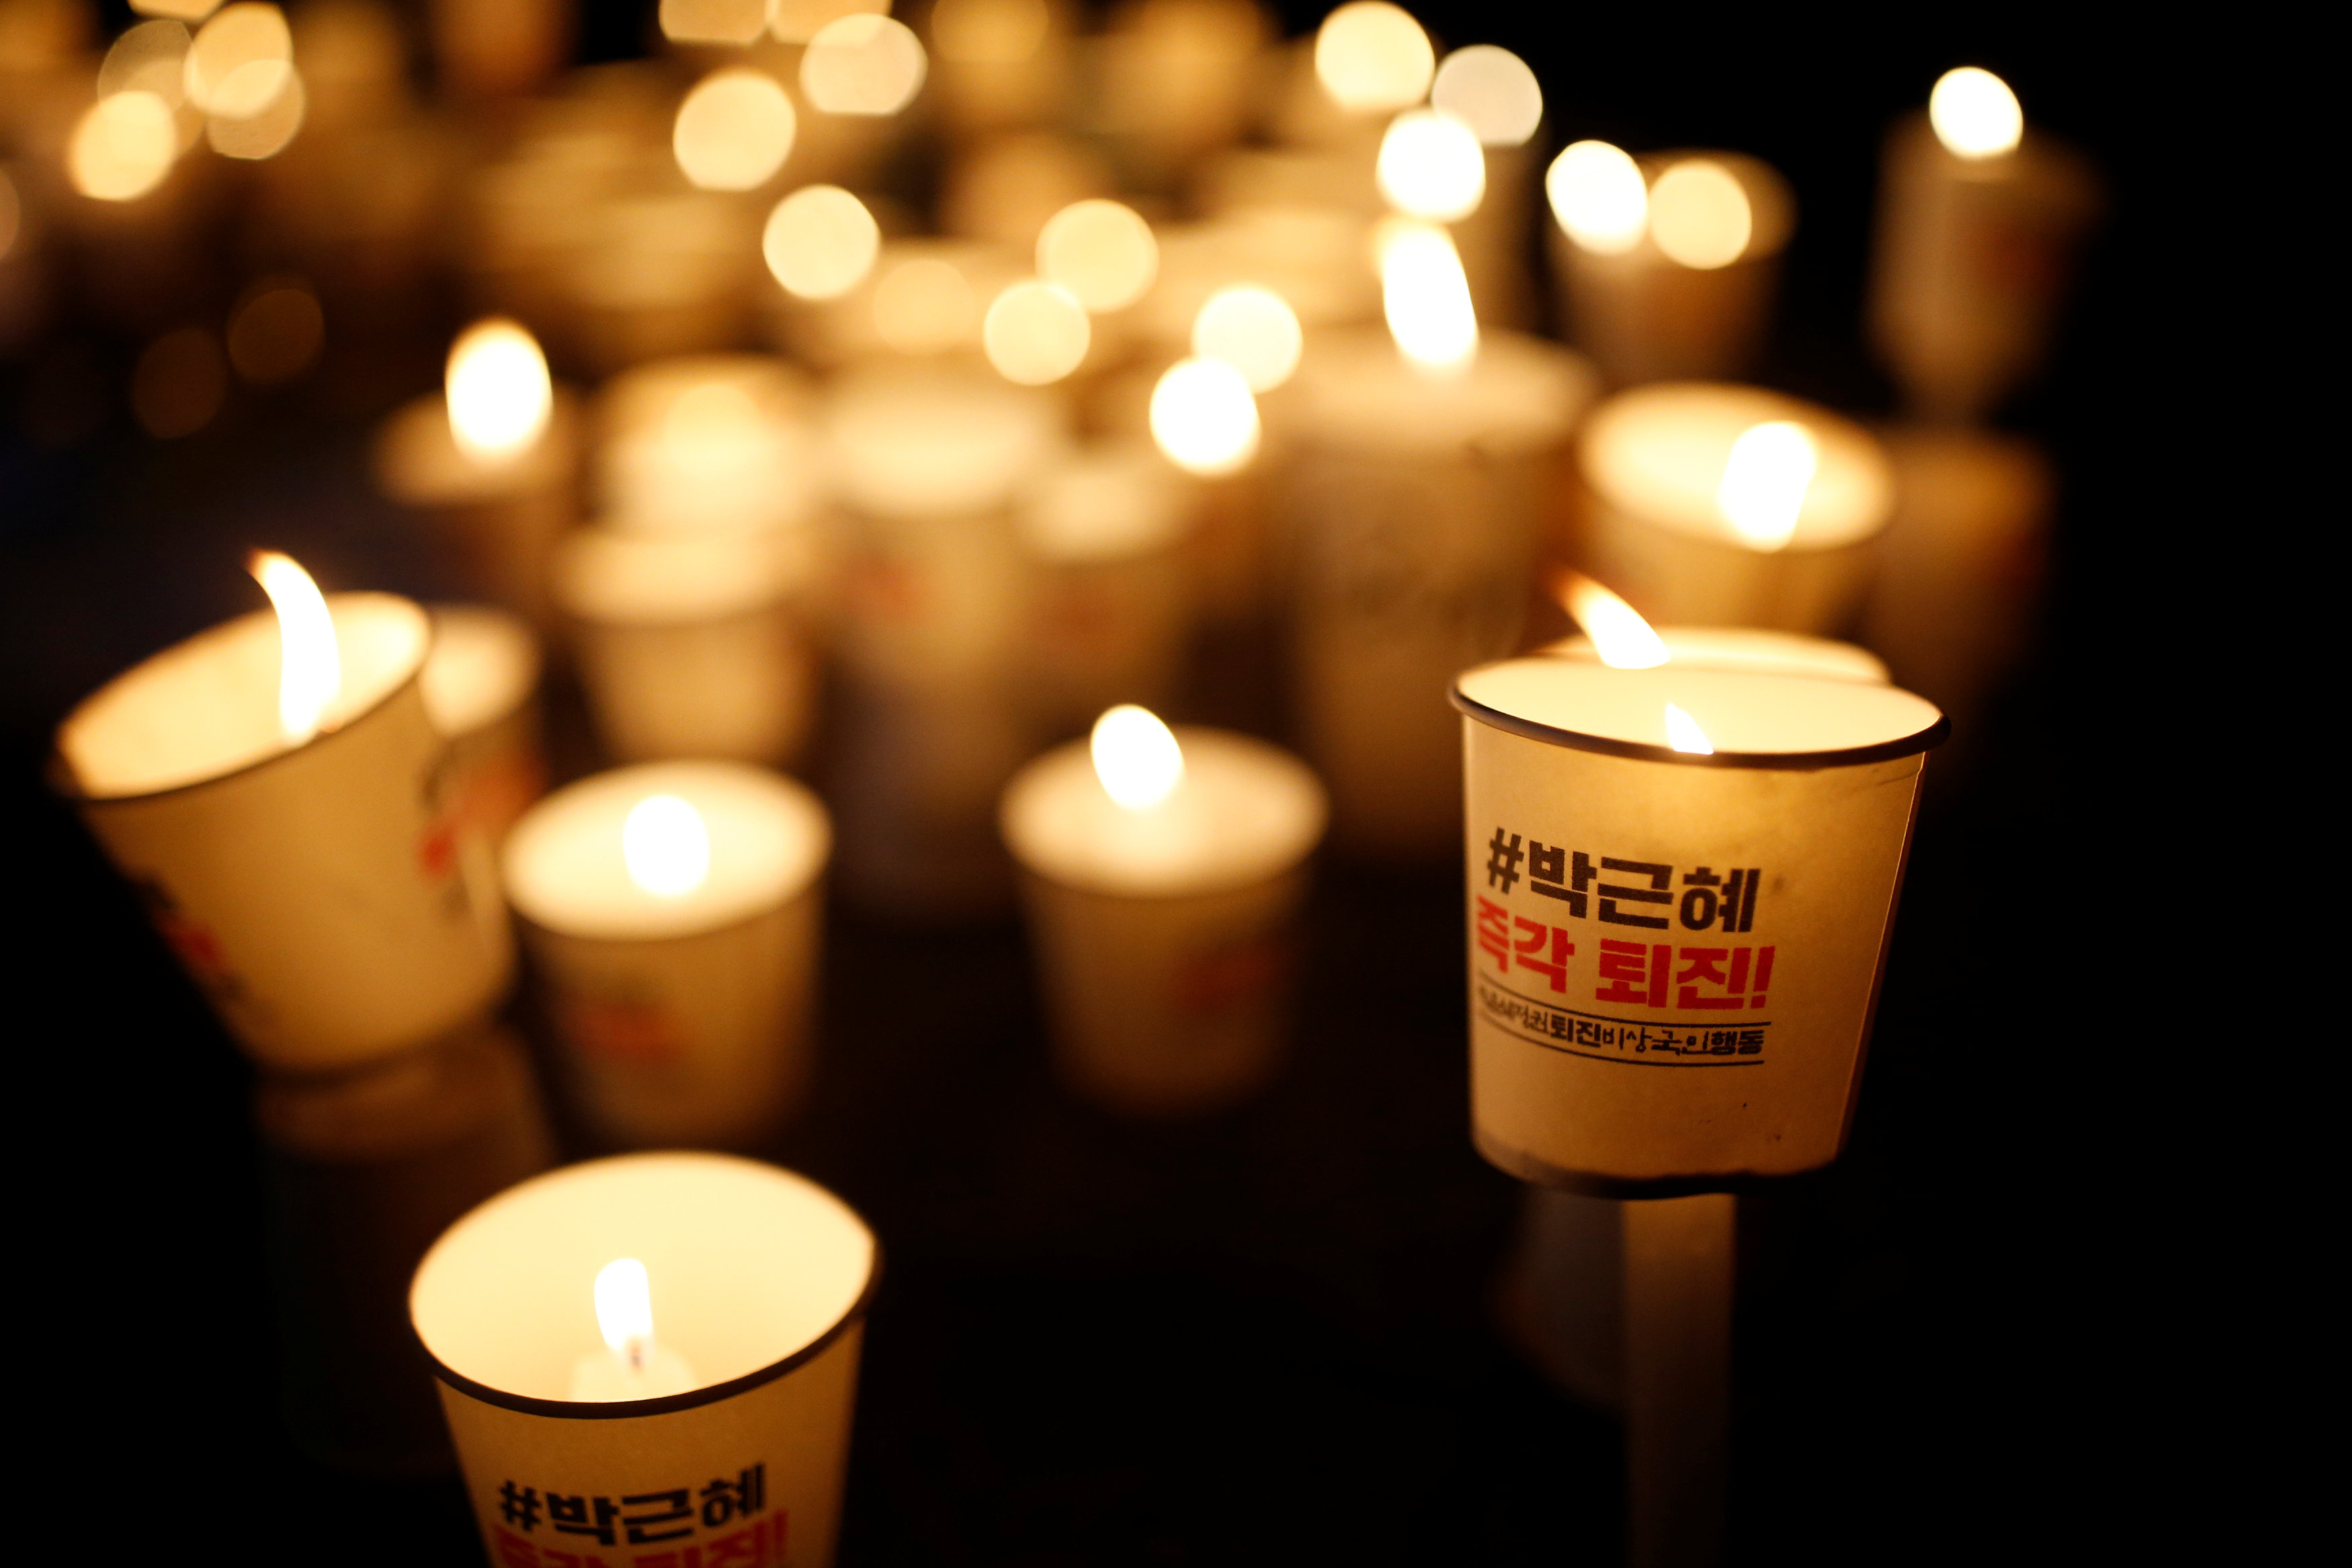 شموع مضاءة فى تظاهرة تطالب برحيل رئيسة كوريا الجنوبية